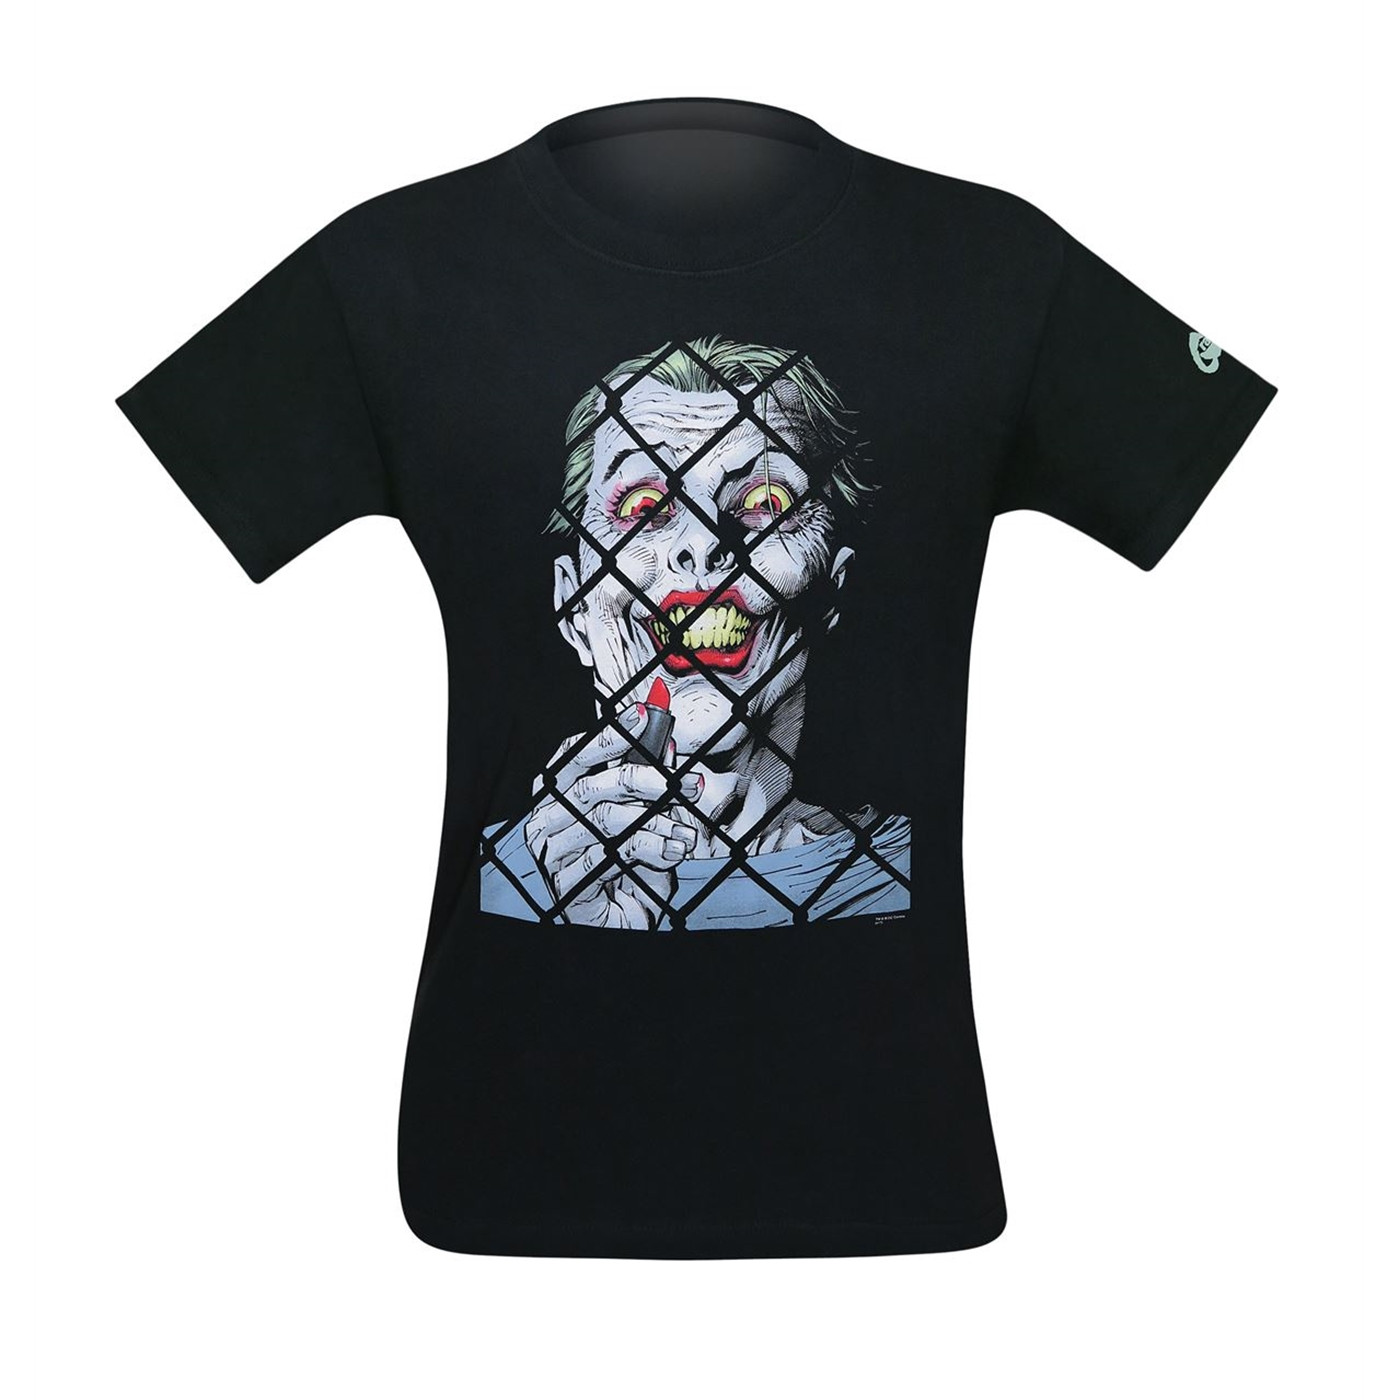 Joker by Jim Lee Variant Cover Men's T-Shirt